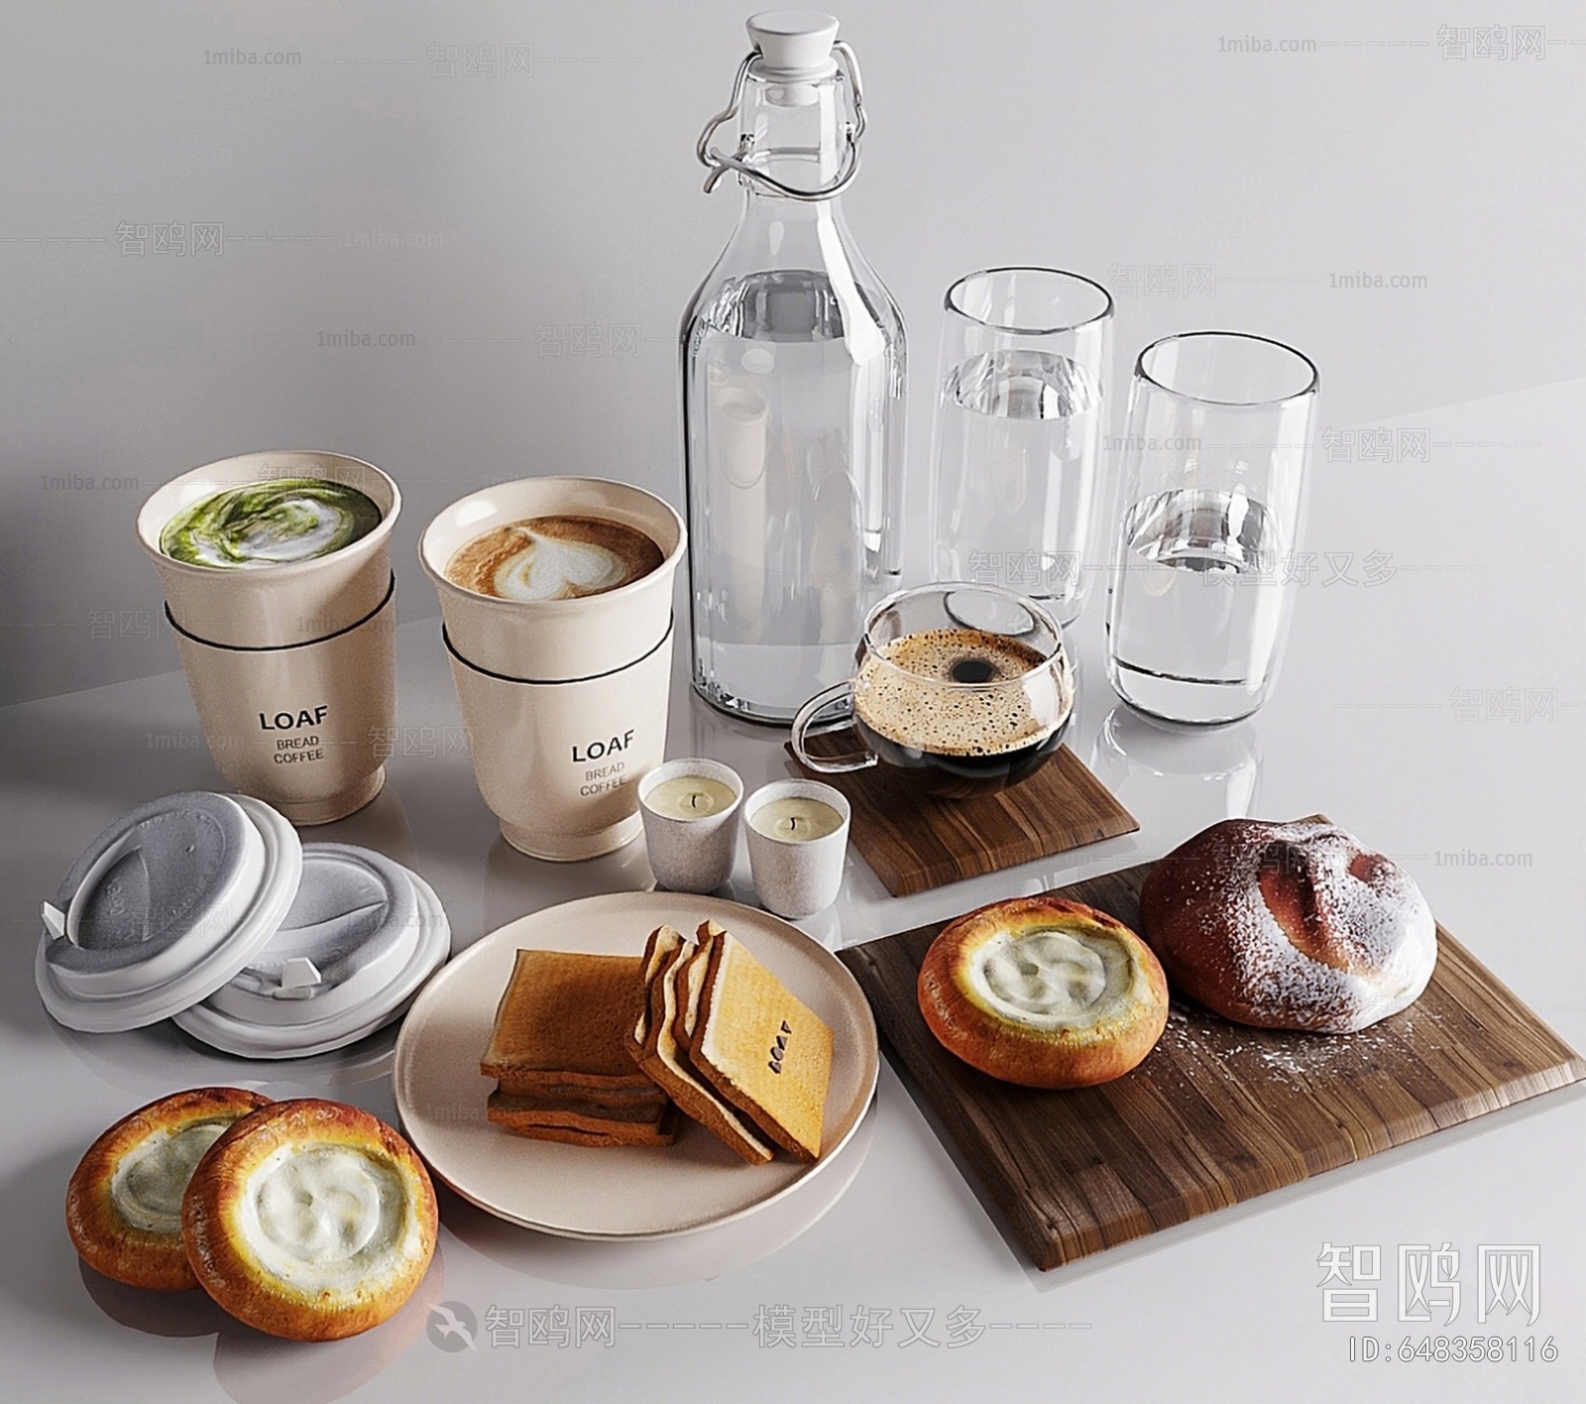 现代玻璃杯 食物 咖啡 面包